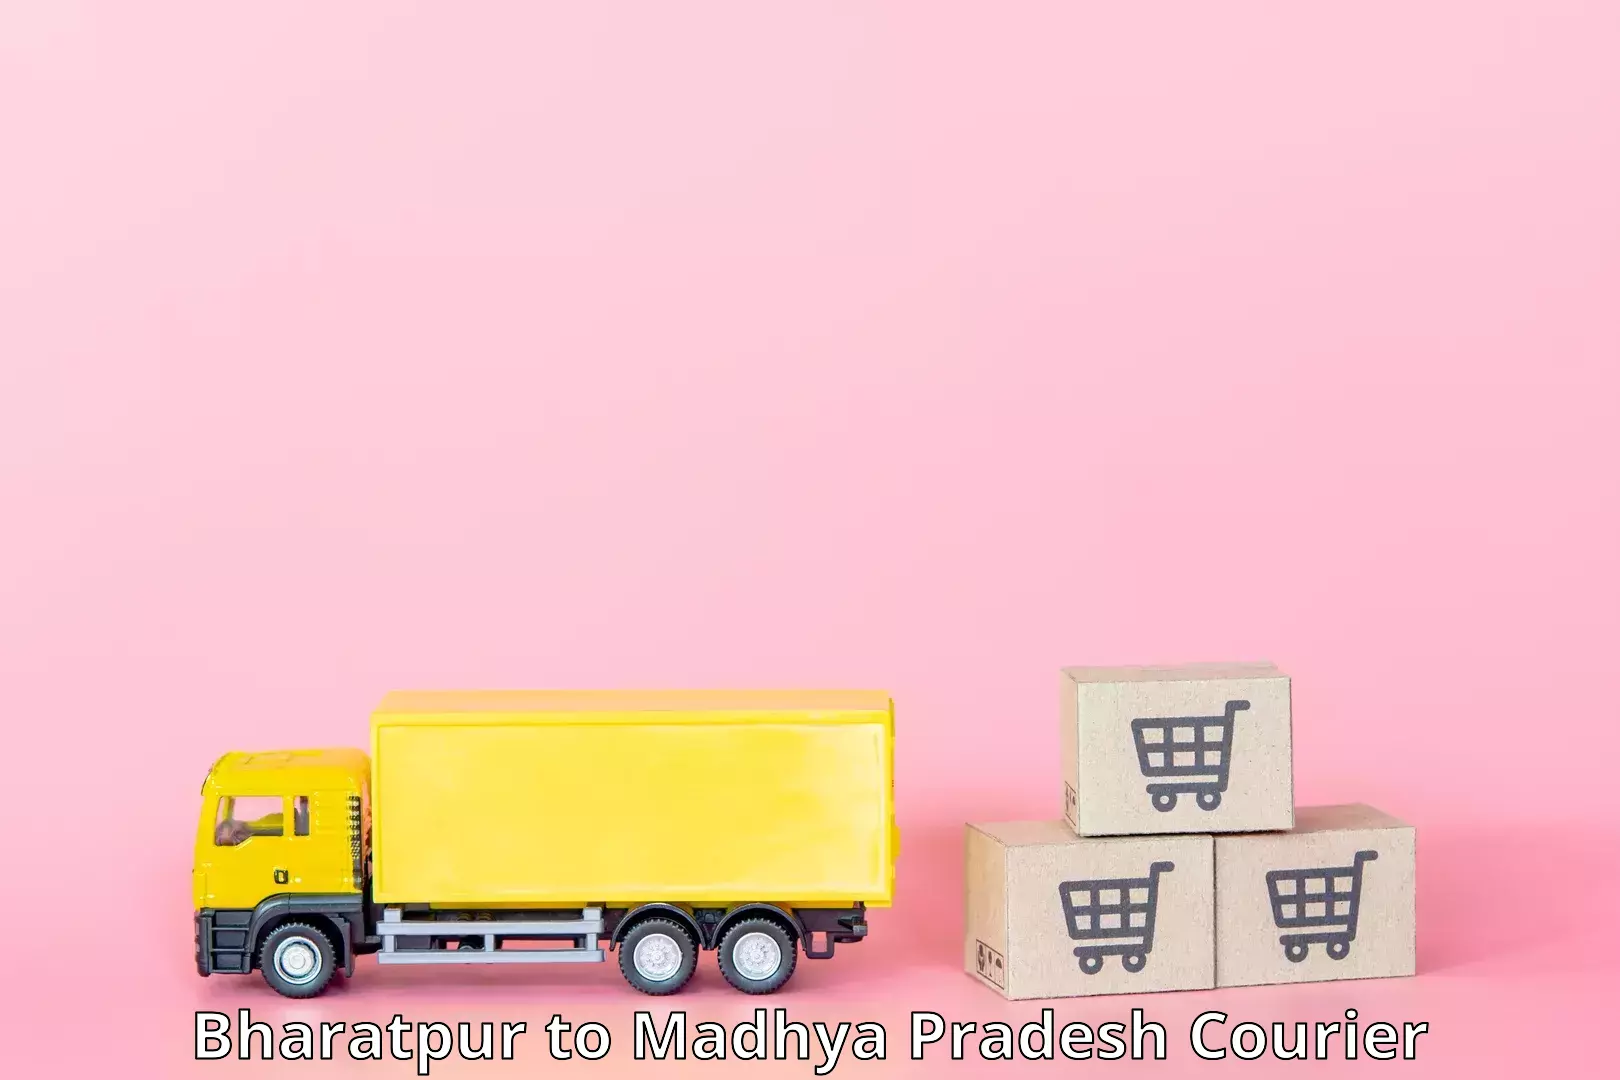 Supply chain efficiency Bharatpur to Madhya Pradesh